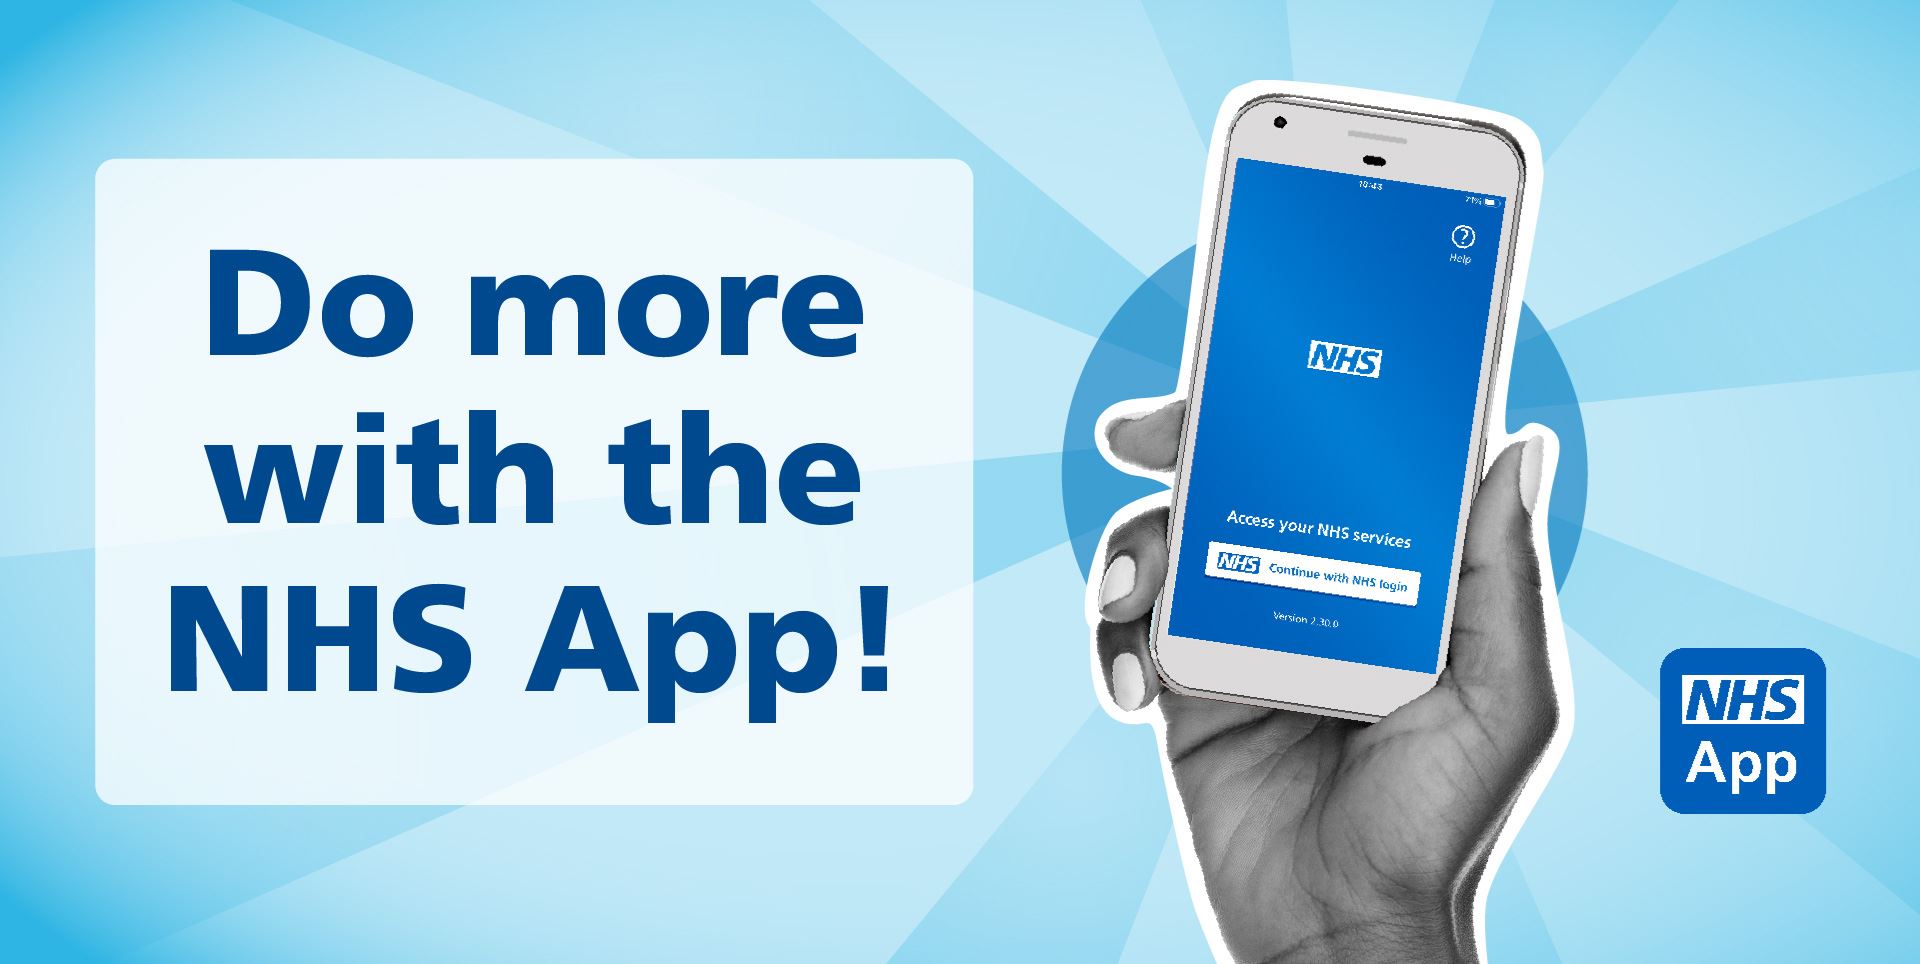 NHS App advert